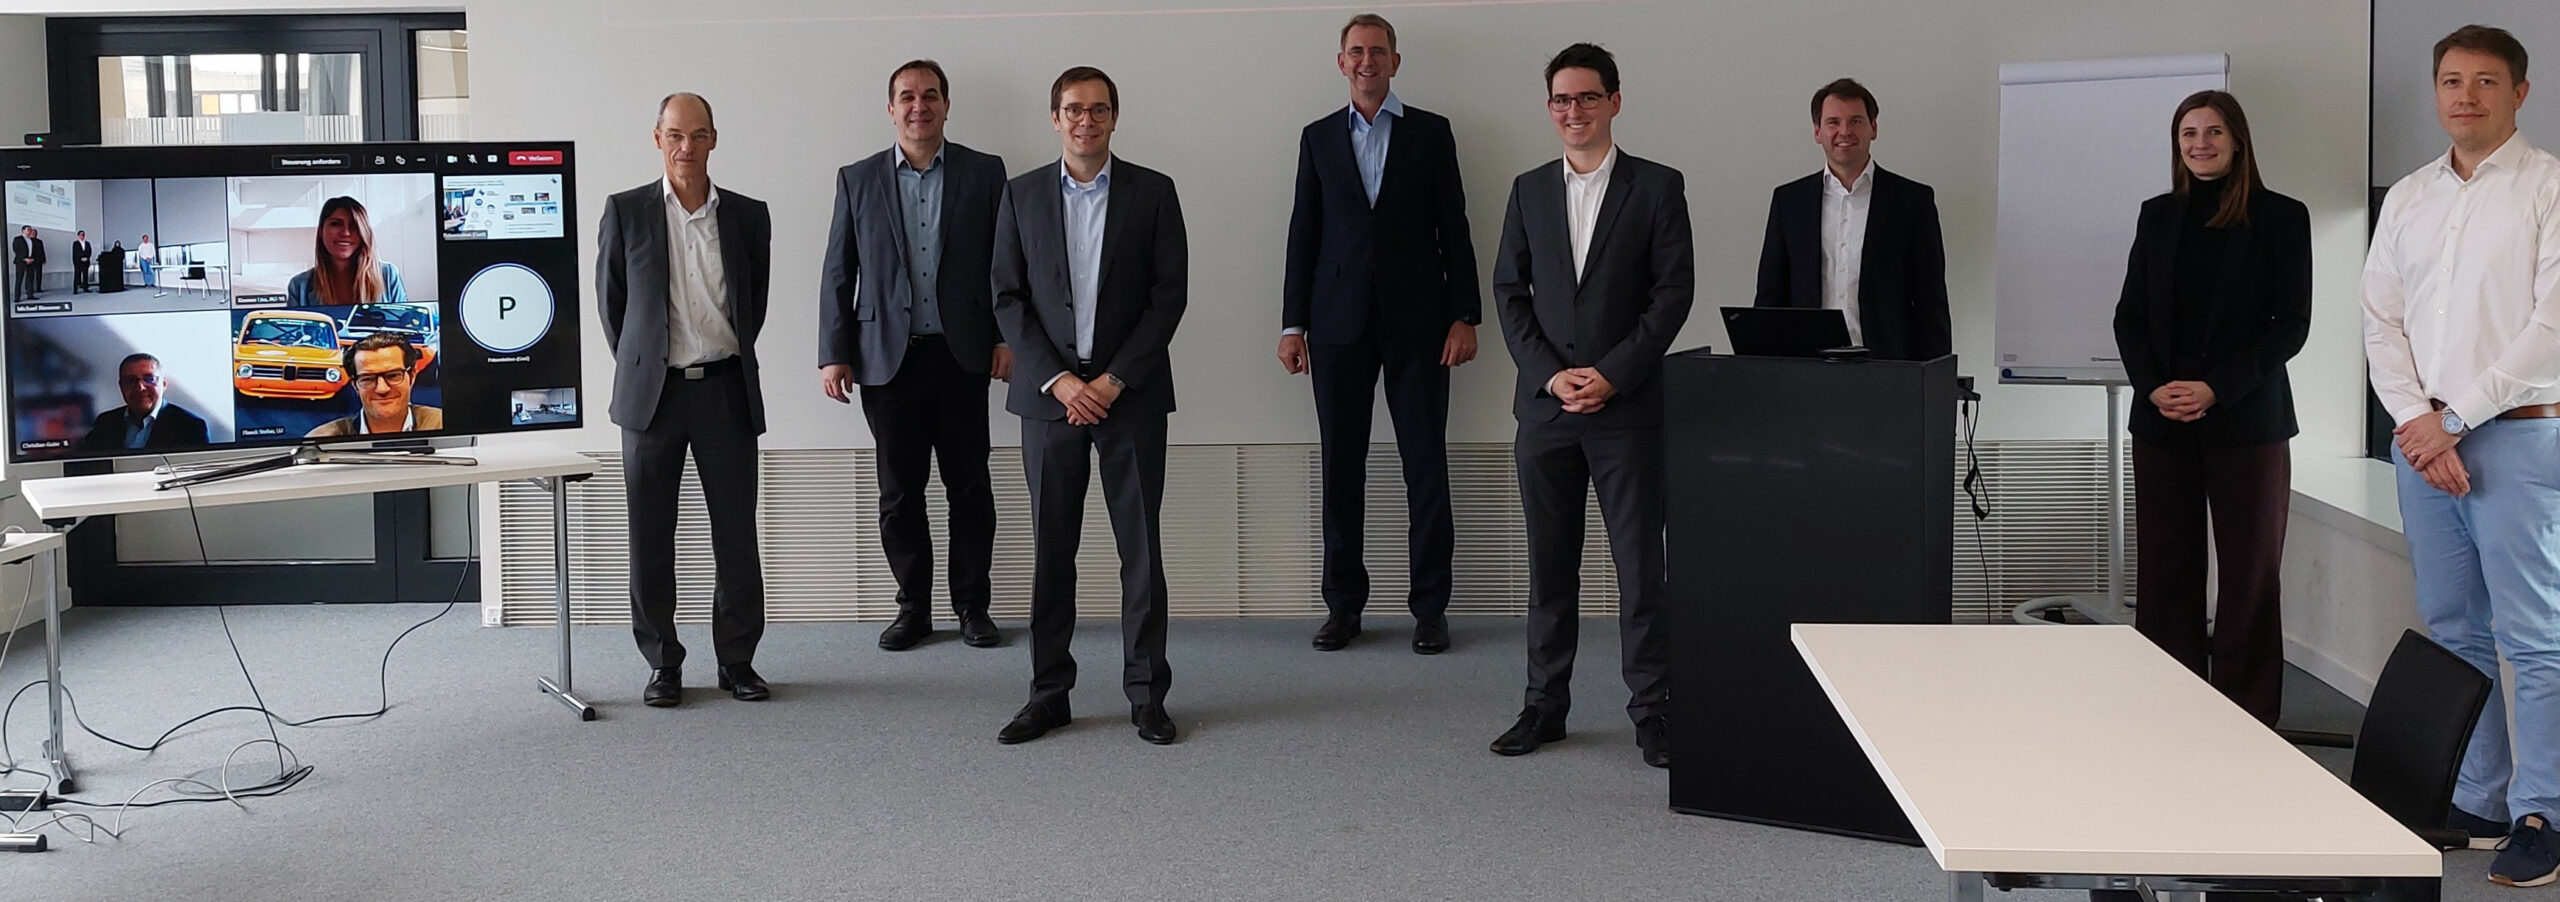 SEC21_Pressemitteilung_BMW_B-scaled BMW Group wird neues Mitglied im Center for Systems Engineering auf dem RWTH Aachen Campus  